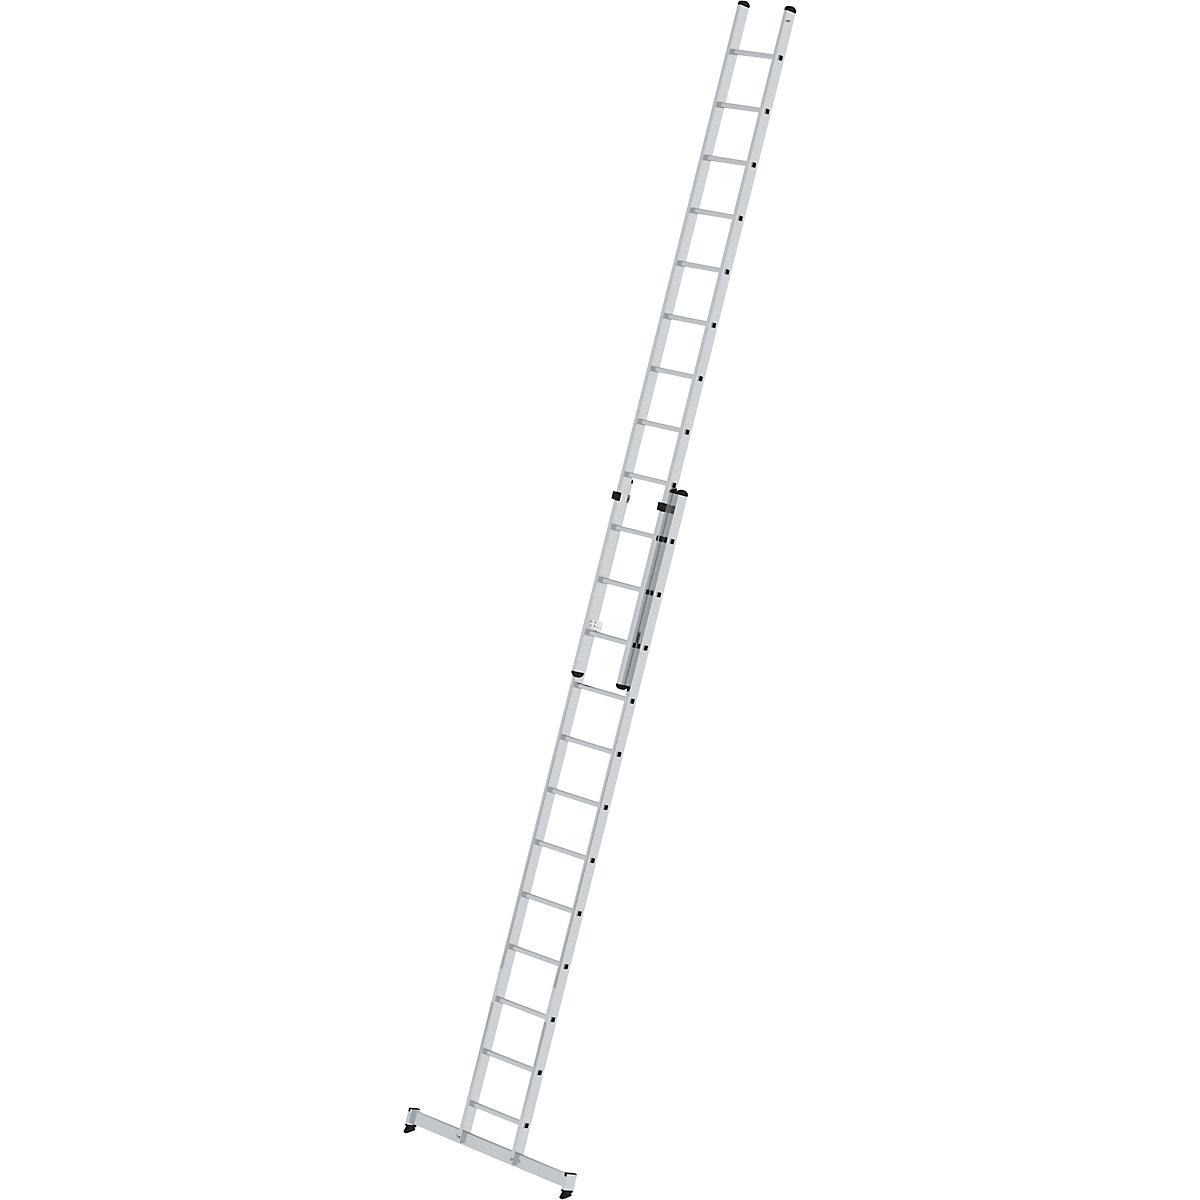 Escada de encosto ajustável em altura – MUNK, escada de regulação por deslize, 2 peças, 2 x 12 degraus, com travessa nivello®-7